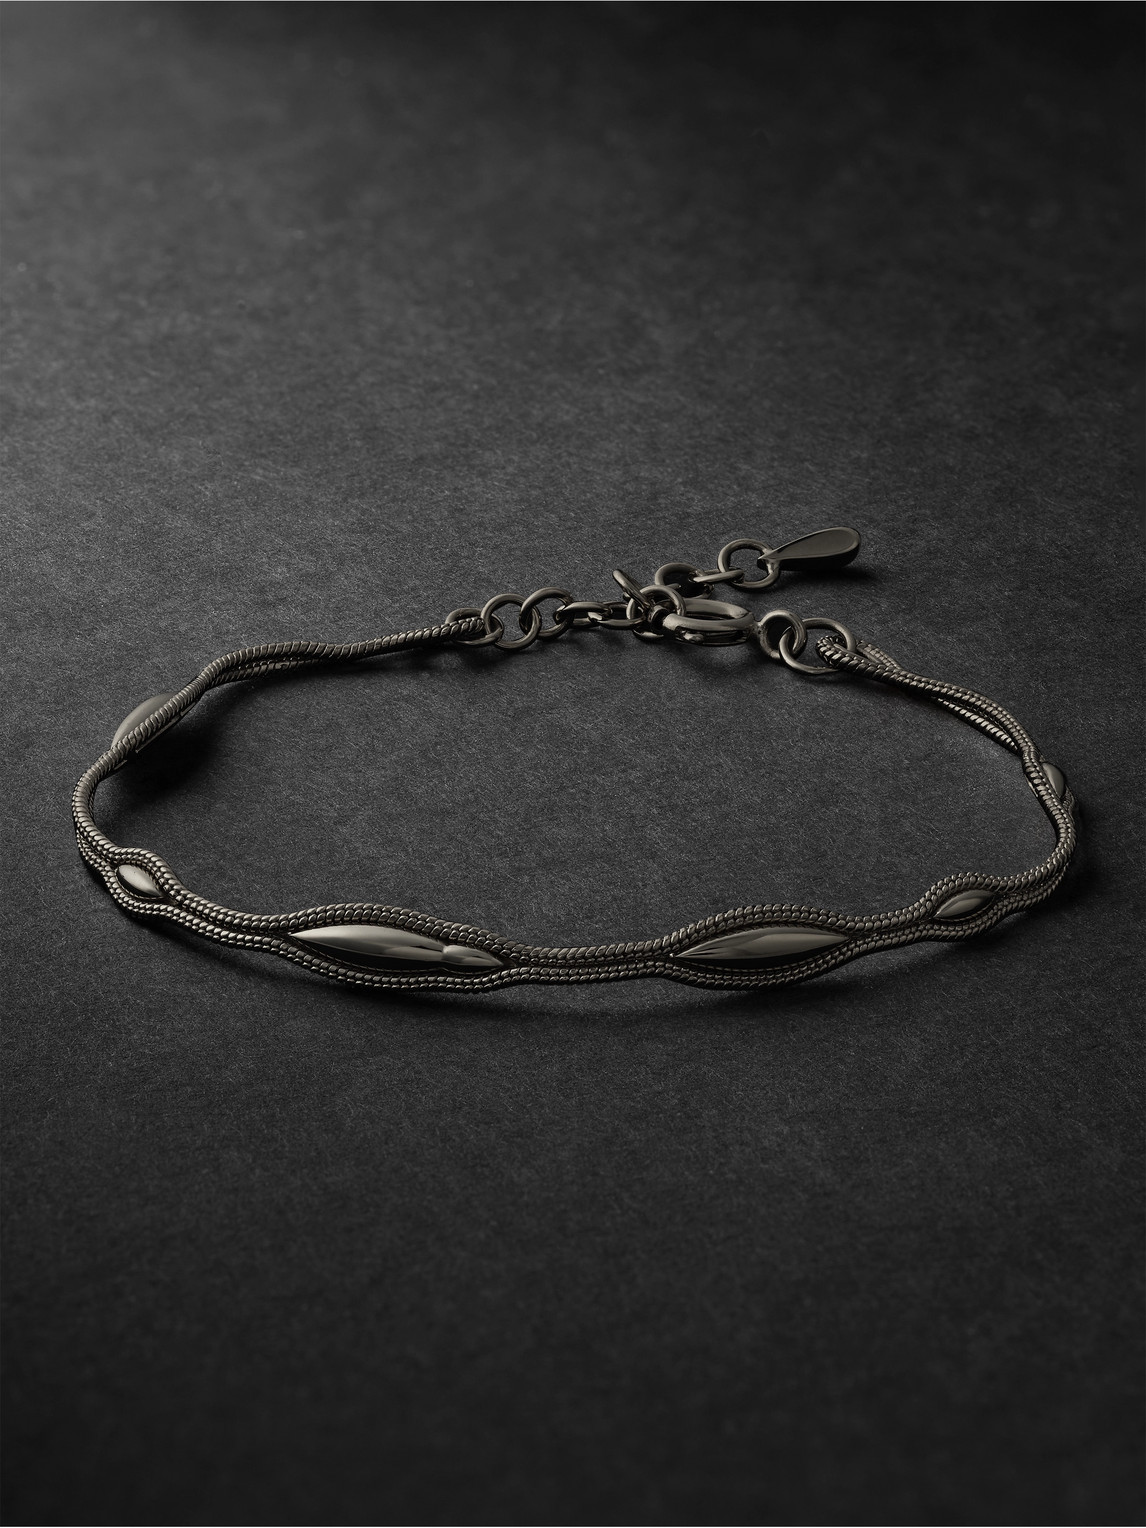 Fluid Black Rhodium-Plated Bracelet